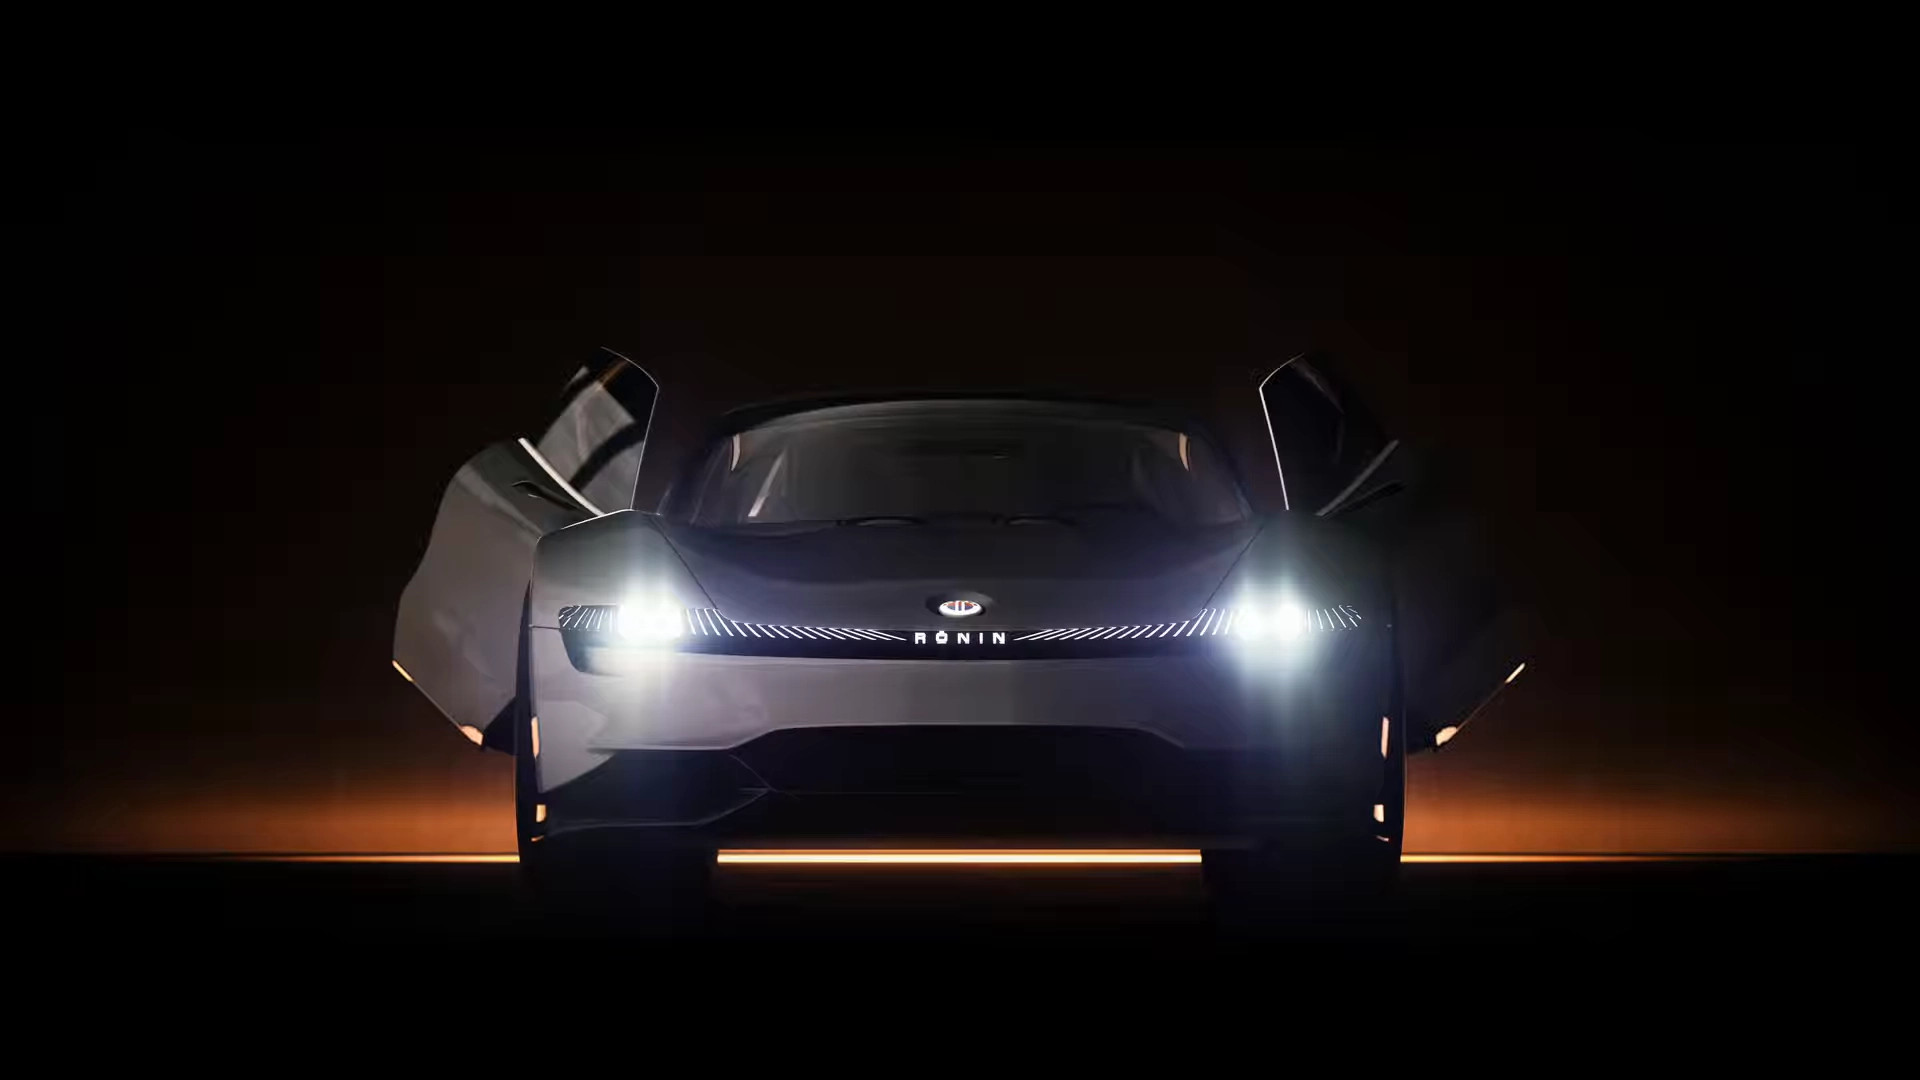 Mengenal Fisker Ronin sebagai Simbol Kemewahan dan Keberlanjutan Teknologi Mobil Listrik dalam Dunia Otomotif. Temukan lebih banyak informasi terbarunya.